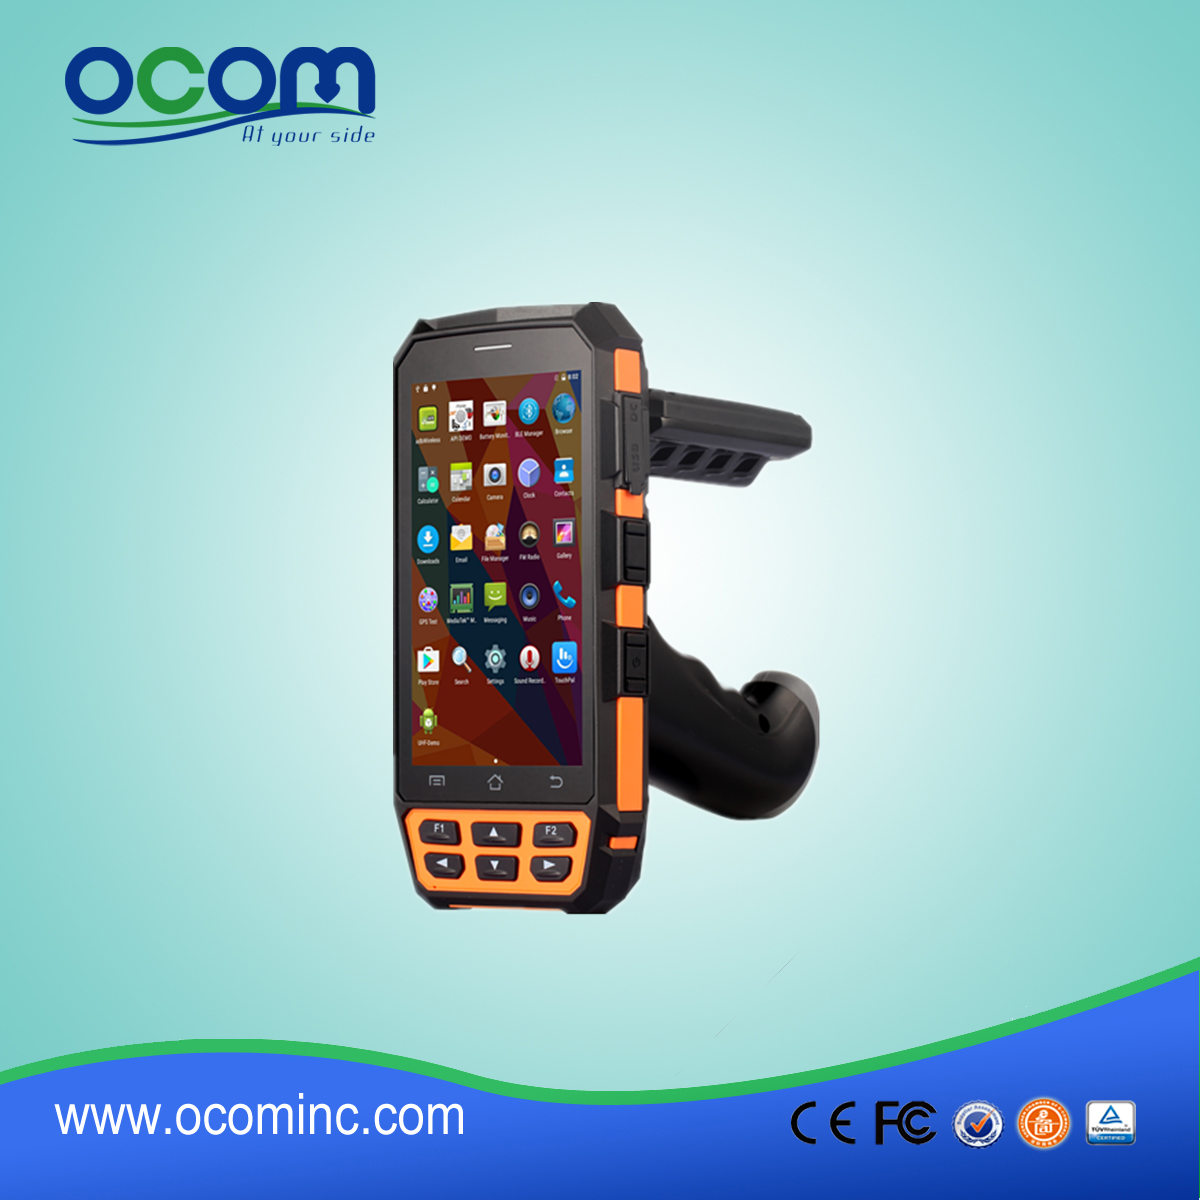 ОКБС-D5000 промышленный ип65 карманный КПК с ОС Android